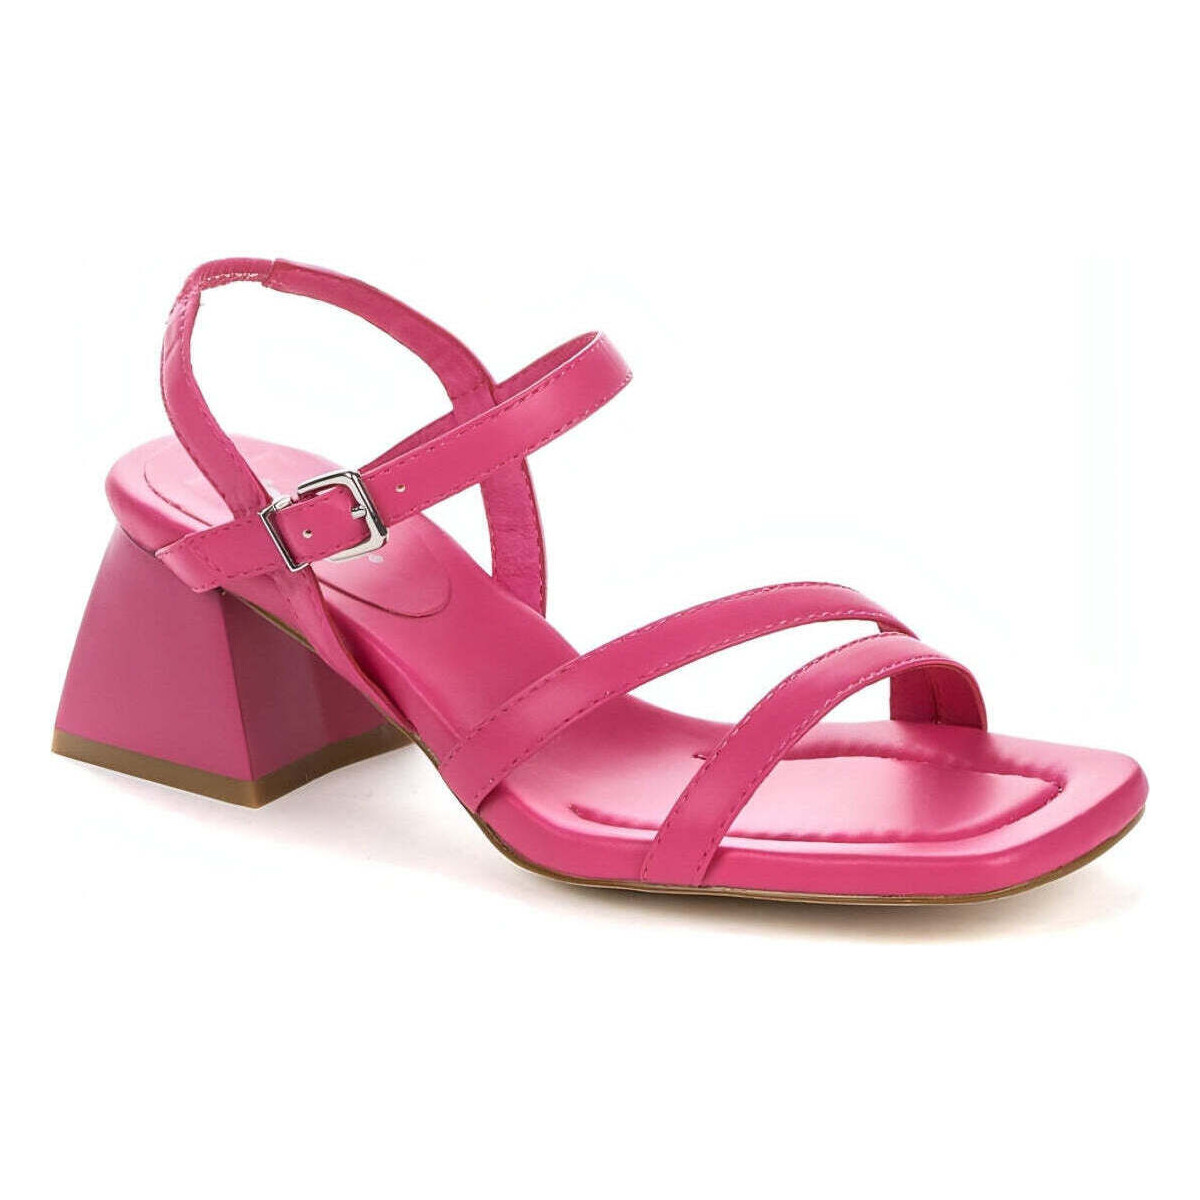 Chaussures Femme Sandales sport Betsy pink elegant open sandals Rose